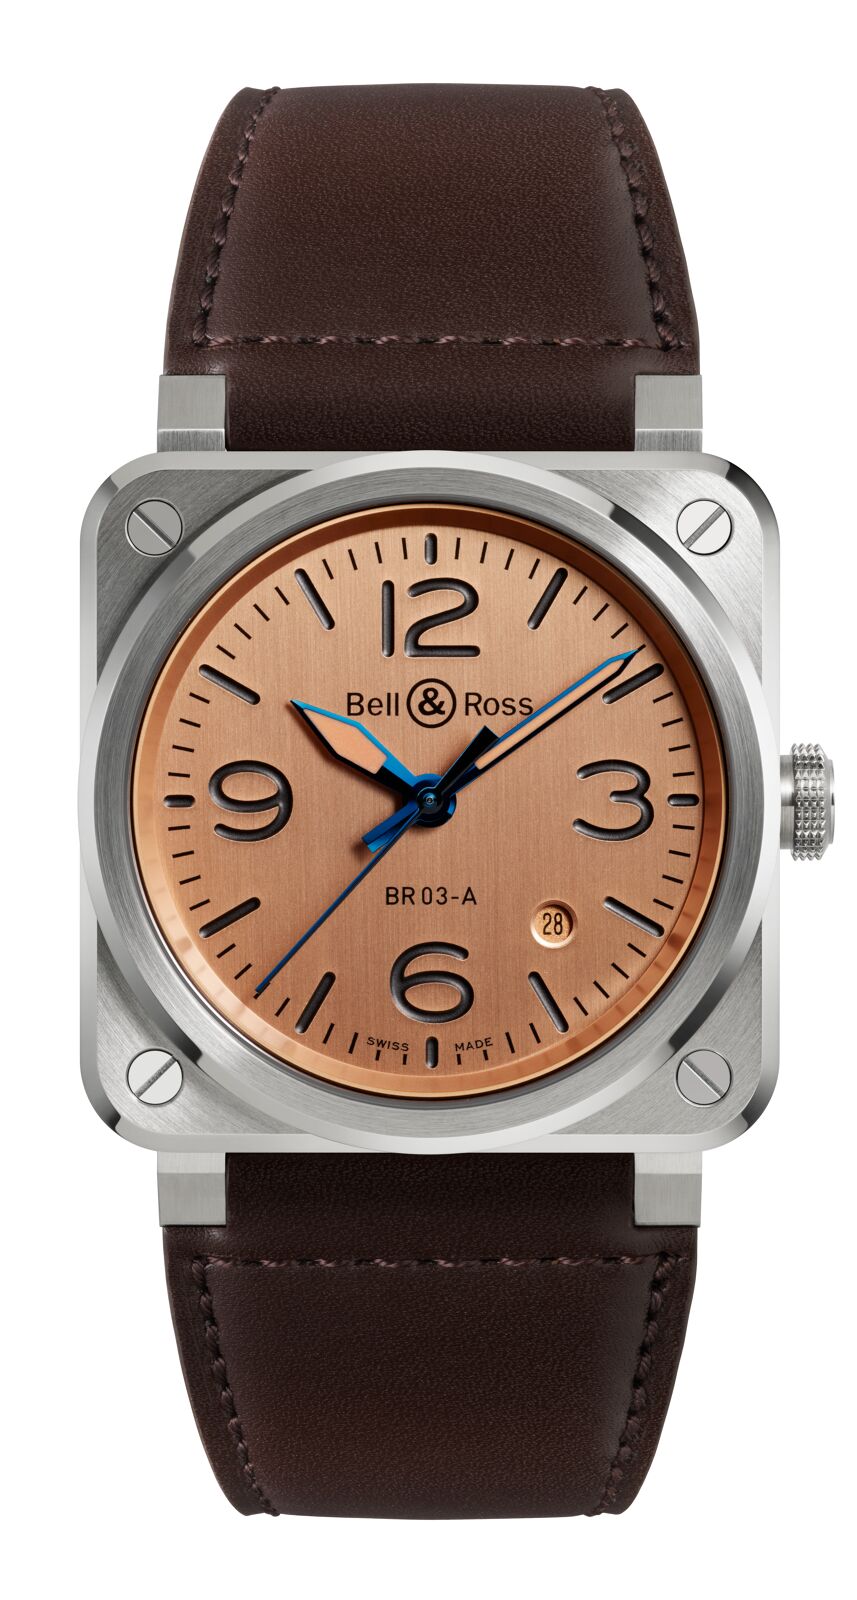 Découvrez la montre Homme BR 03-A Copper de Bell & Ross, une montre de luxe qui synthétise l’identité et le style de la maison. Commandez-la chez Dumas Horloger à Avignon.